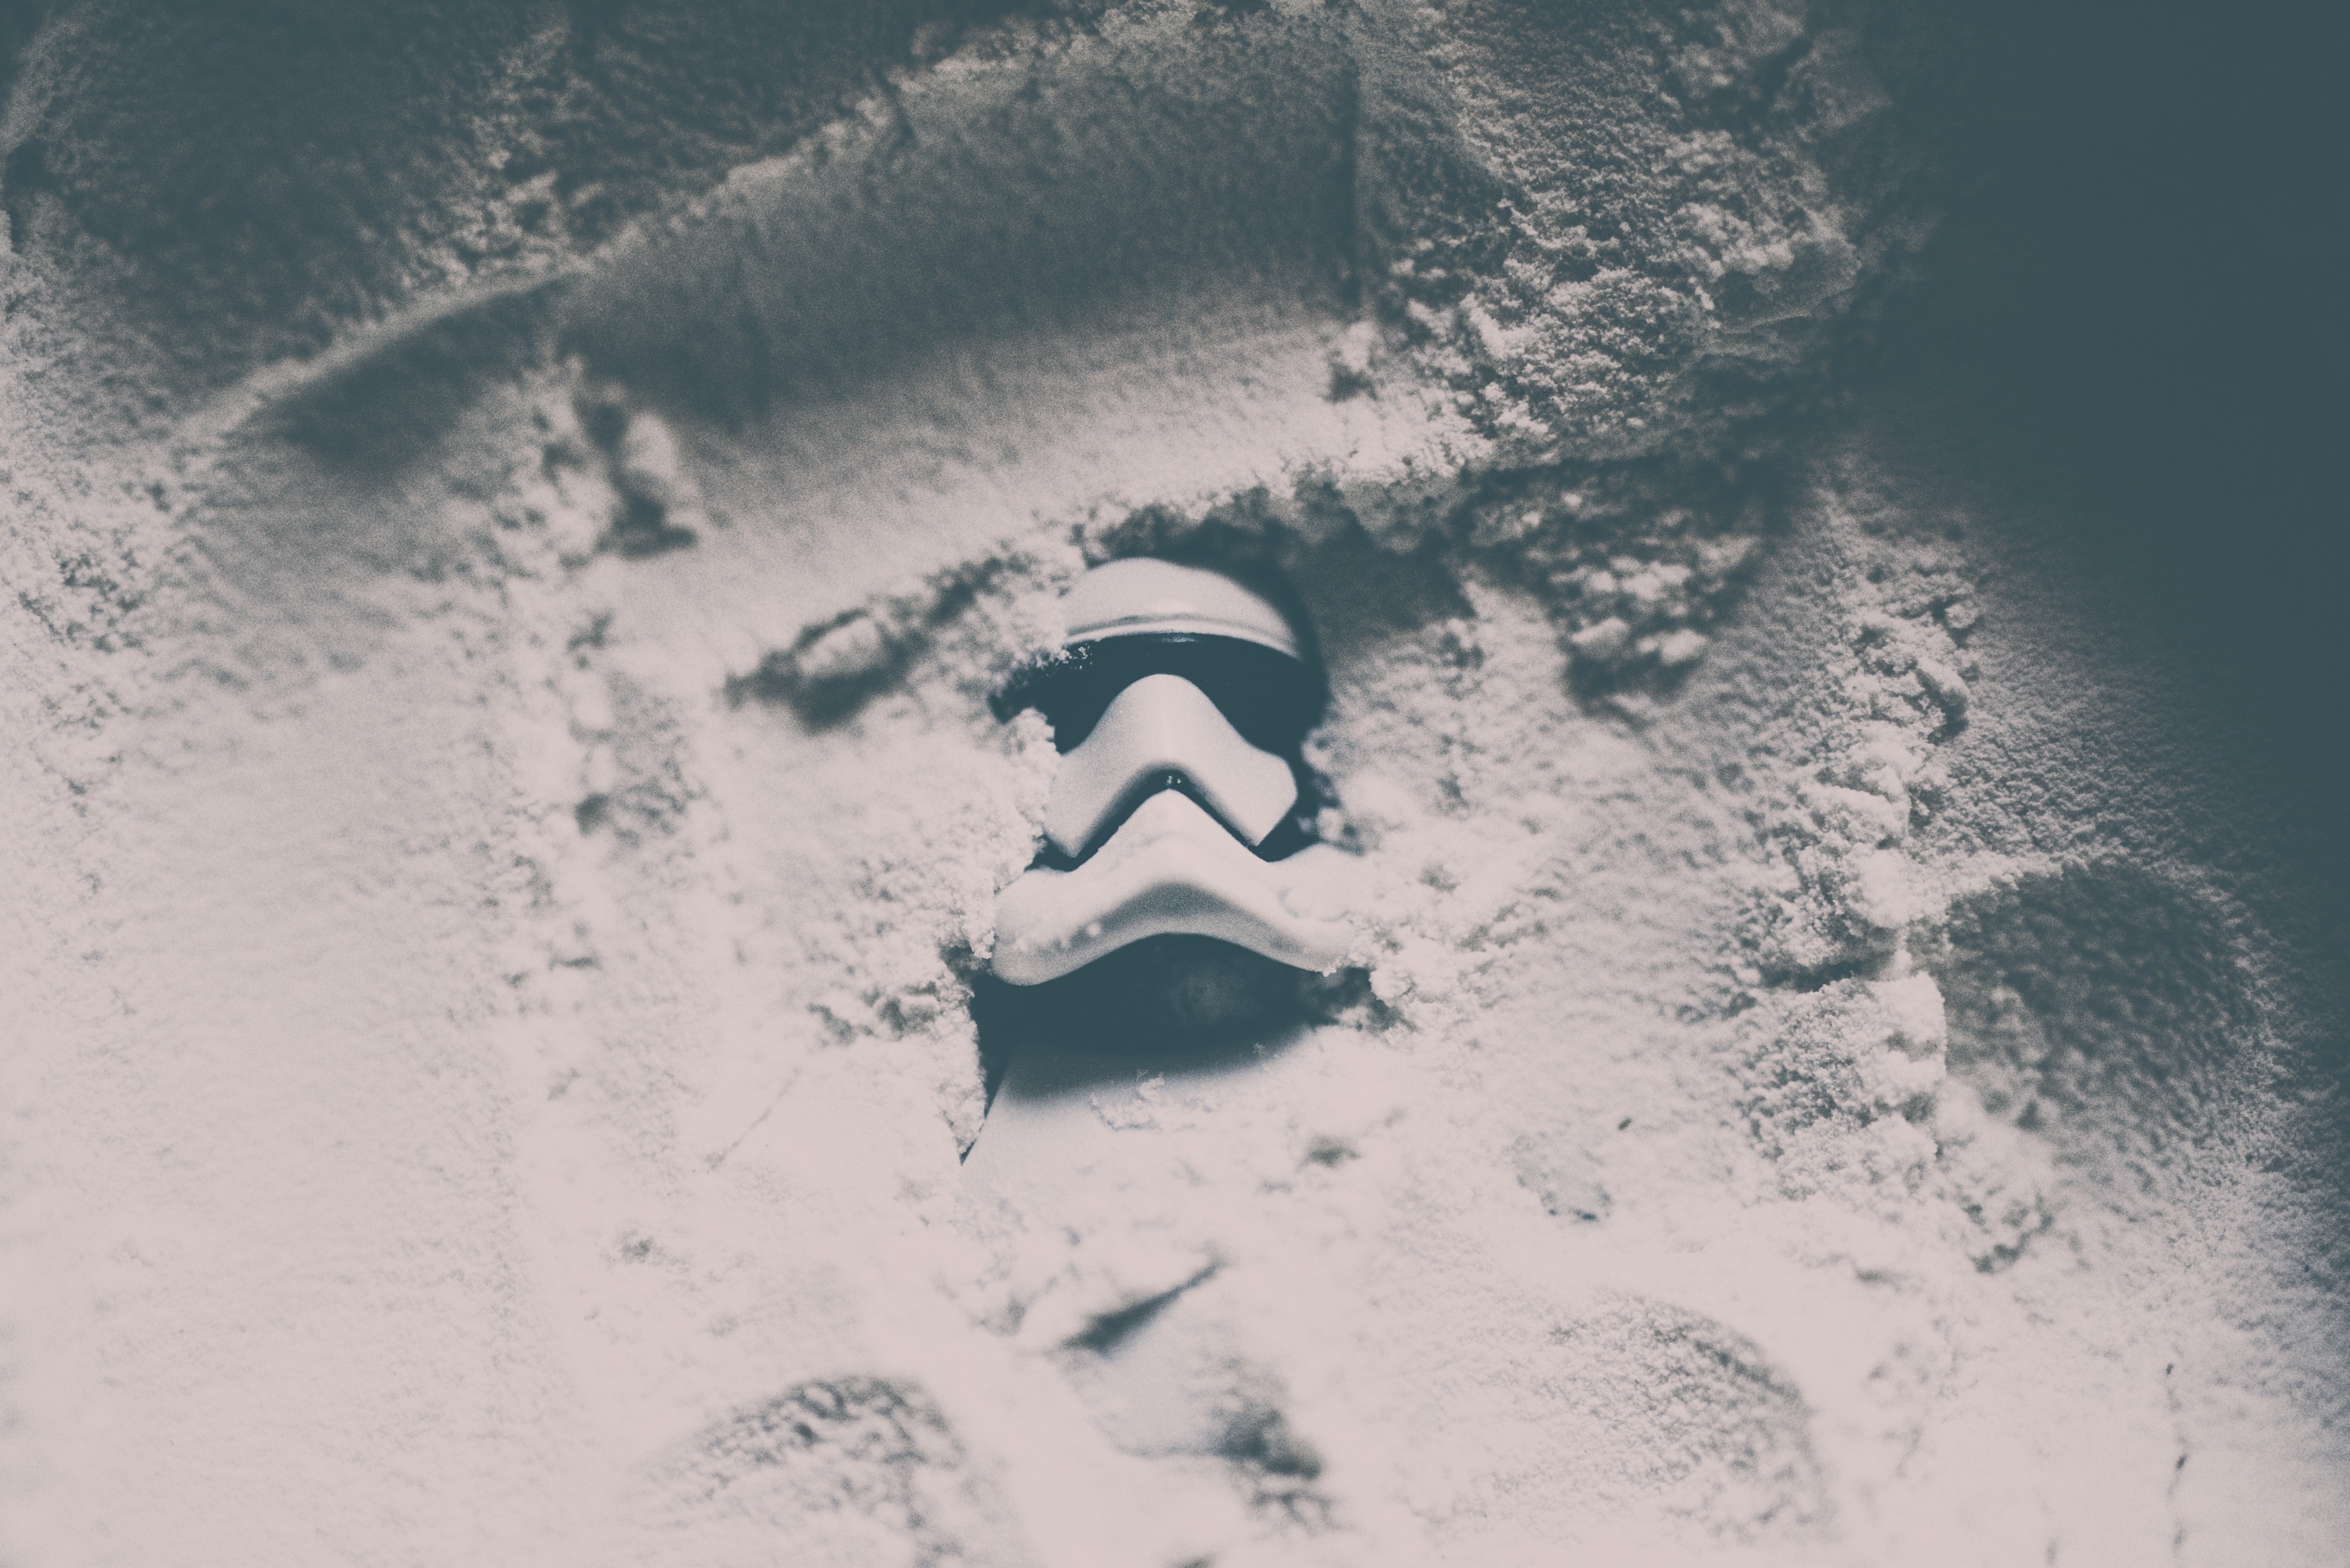 General 3680x2456 stormtrooper Star Wars Trooper minimalism helmet Jedi sand digital art monochrome